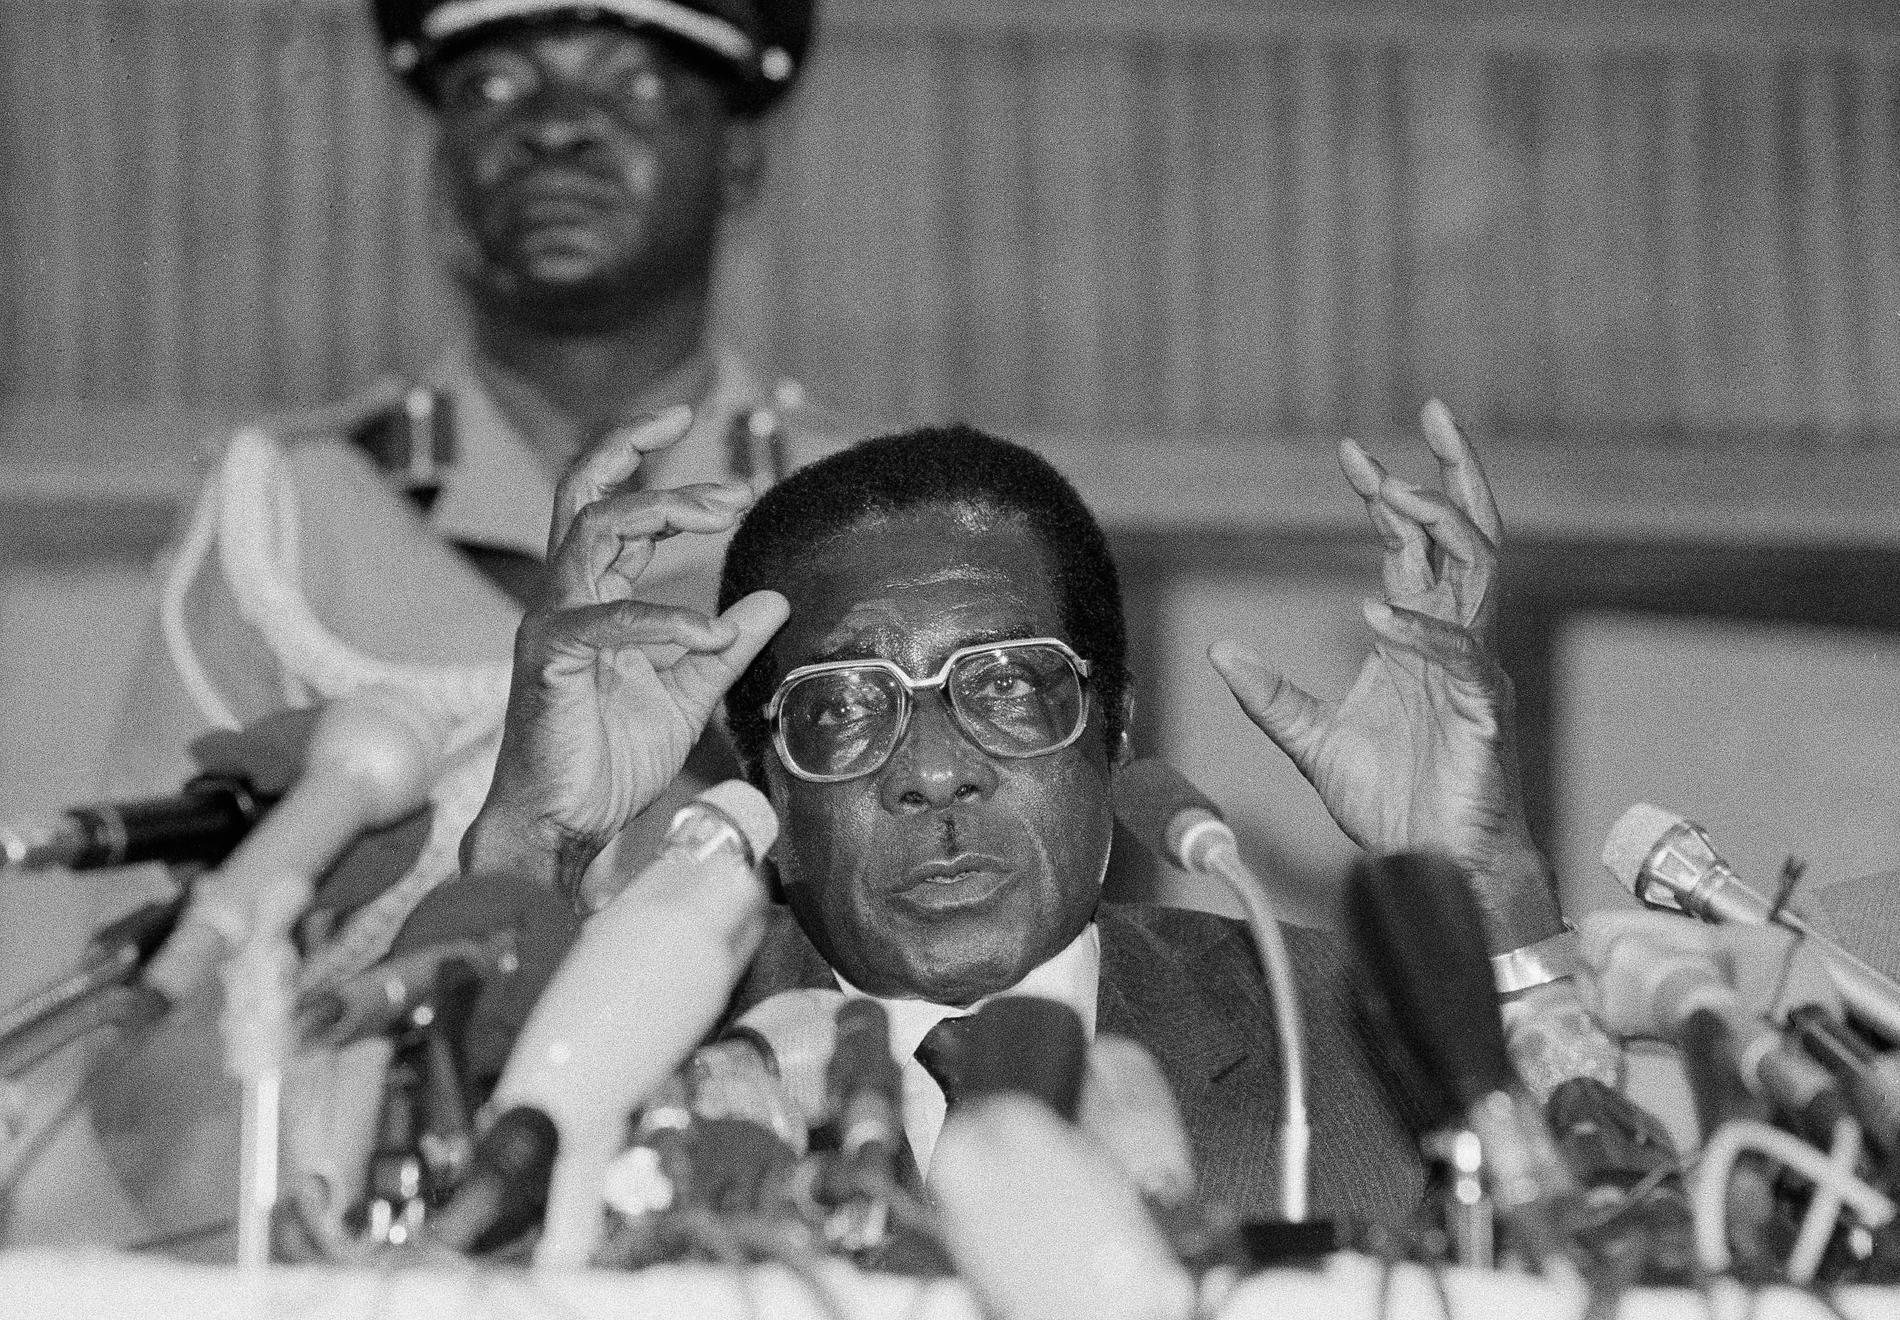 Robert Mugabe styrde Zimbabwe i 37 år. Med tiden beskrevs han alltmer som en ”diktator” och ”tyrann”.